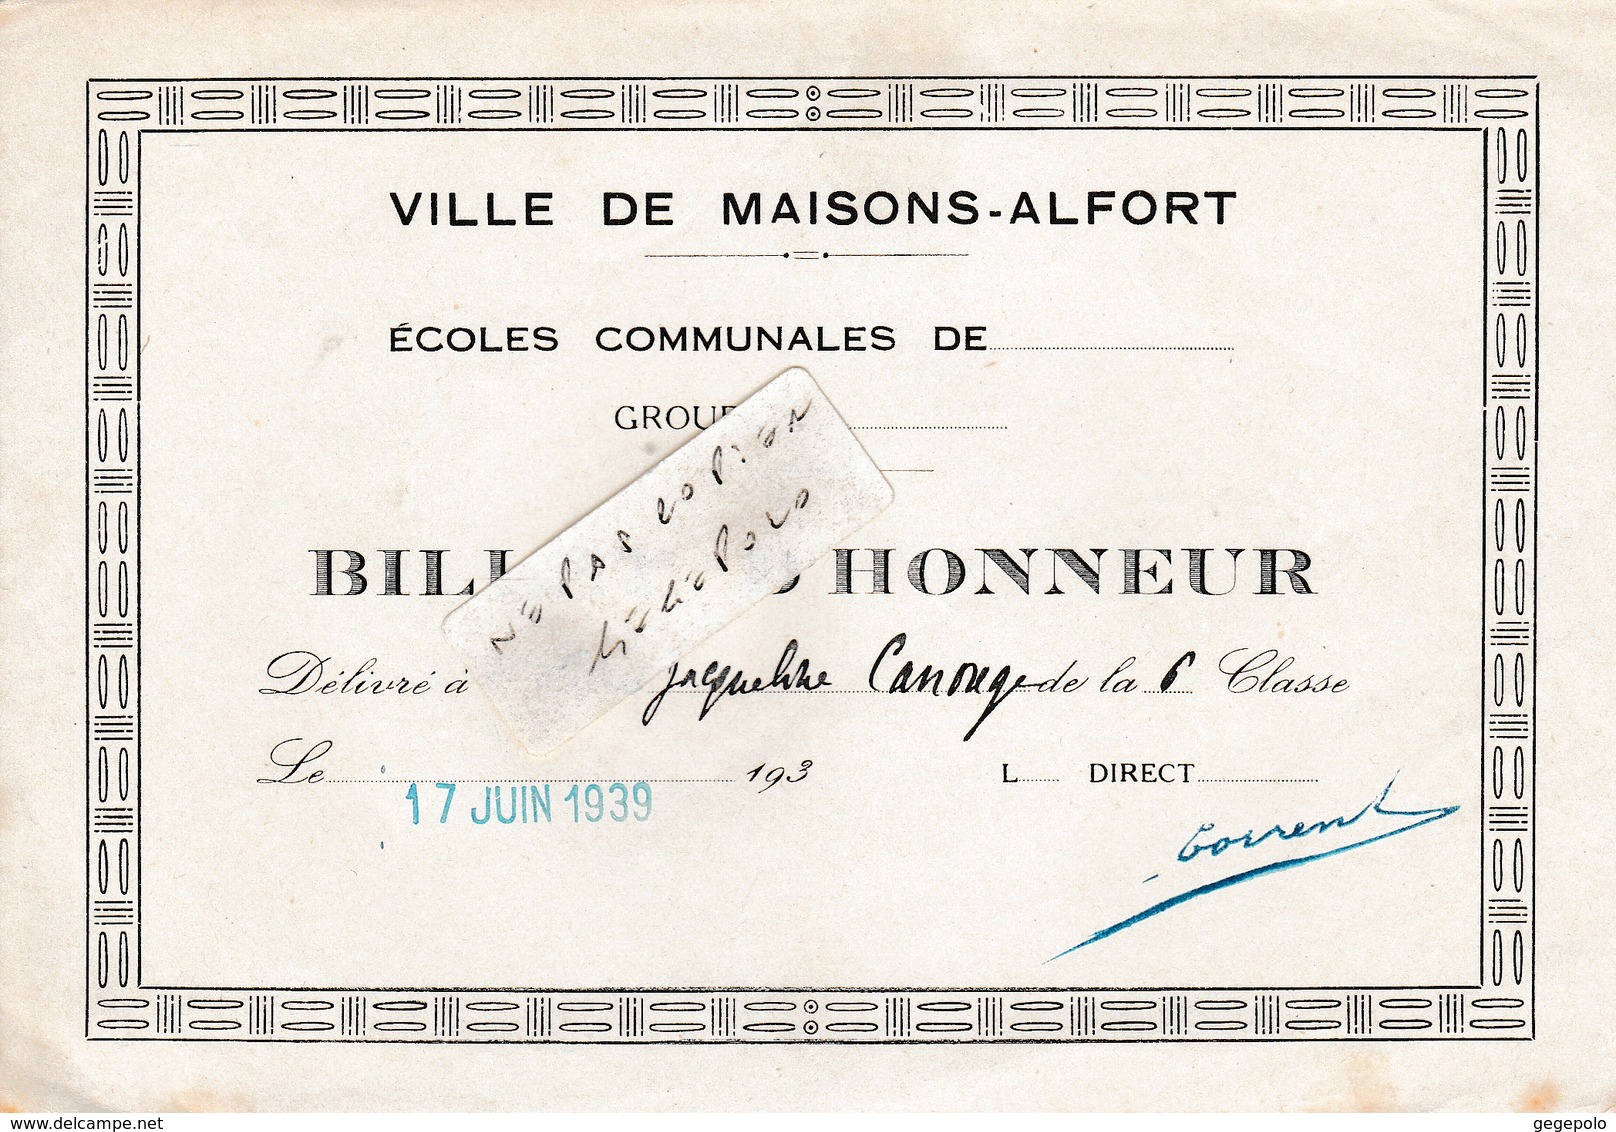 Ville De MAISONS-ALFORT (94) - Ecoles Communales Jules Ferry -  ( 2 ) Billet D'Honneur  ( En L'état D'usage ) - Diplomas Y Calificaciones Escolares